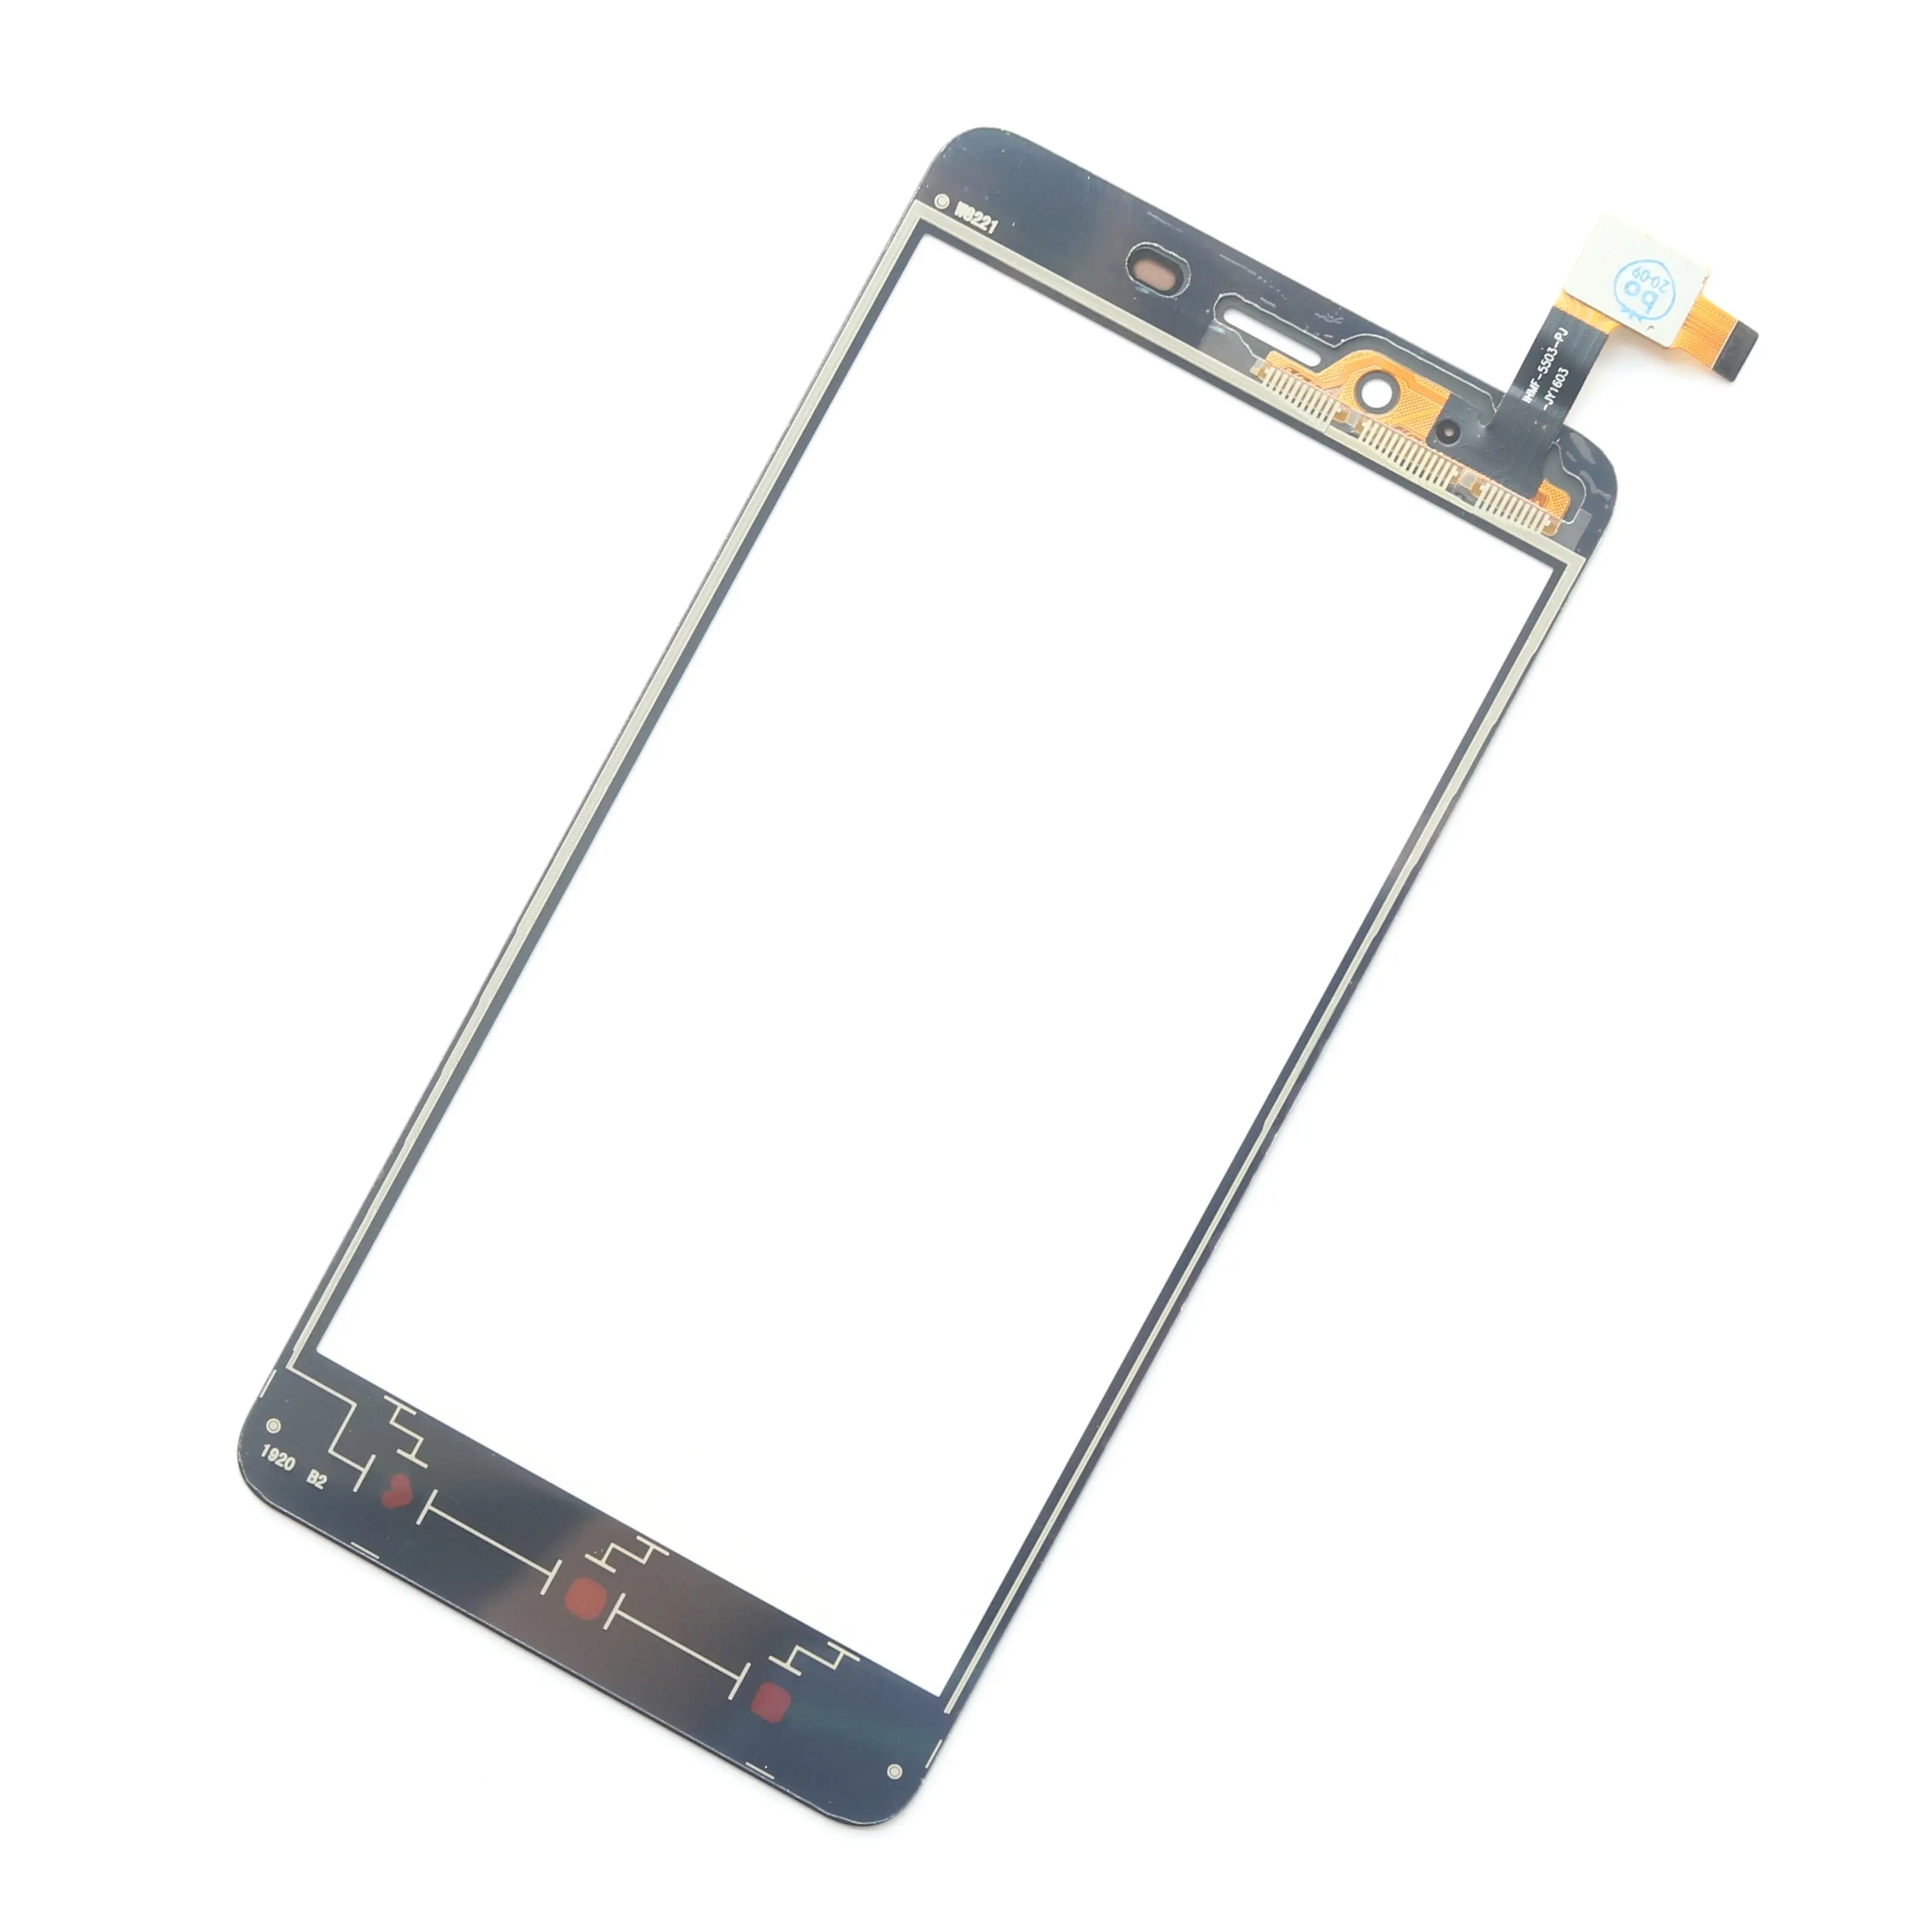 G + OCA Pro 100% qualidade original TP painel de vidro frontal digital touch screen adequado para Huawei reparação do telefone móvel